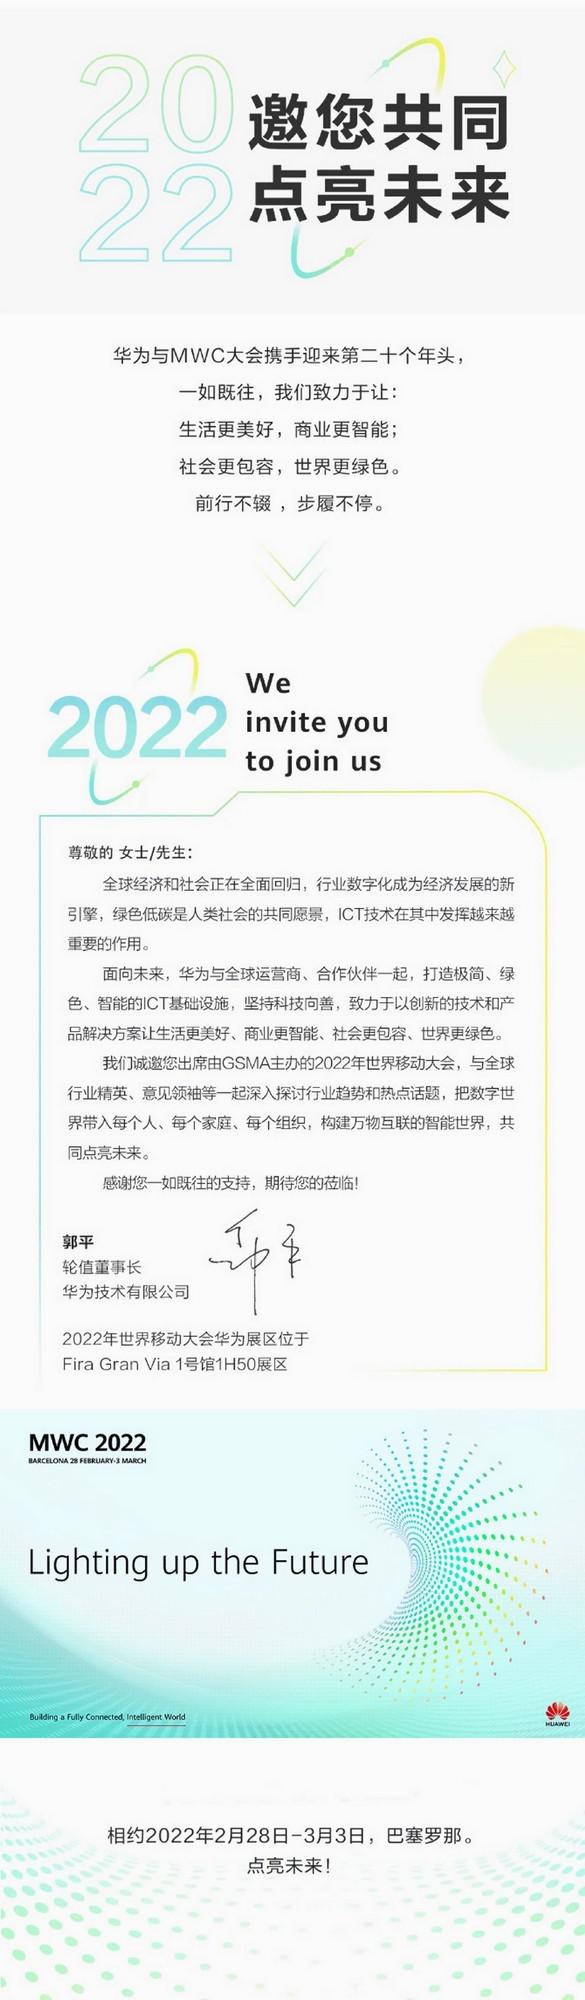  华为将参加 MWC 2022 世界移动通信大会 